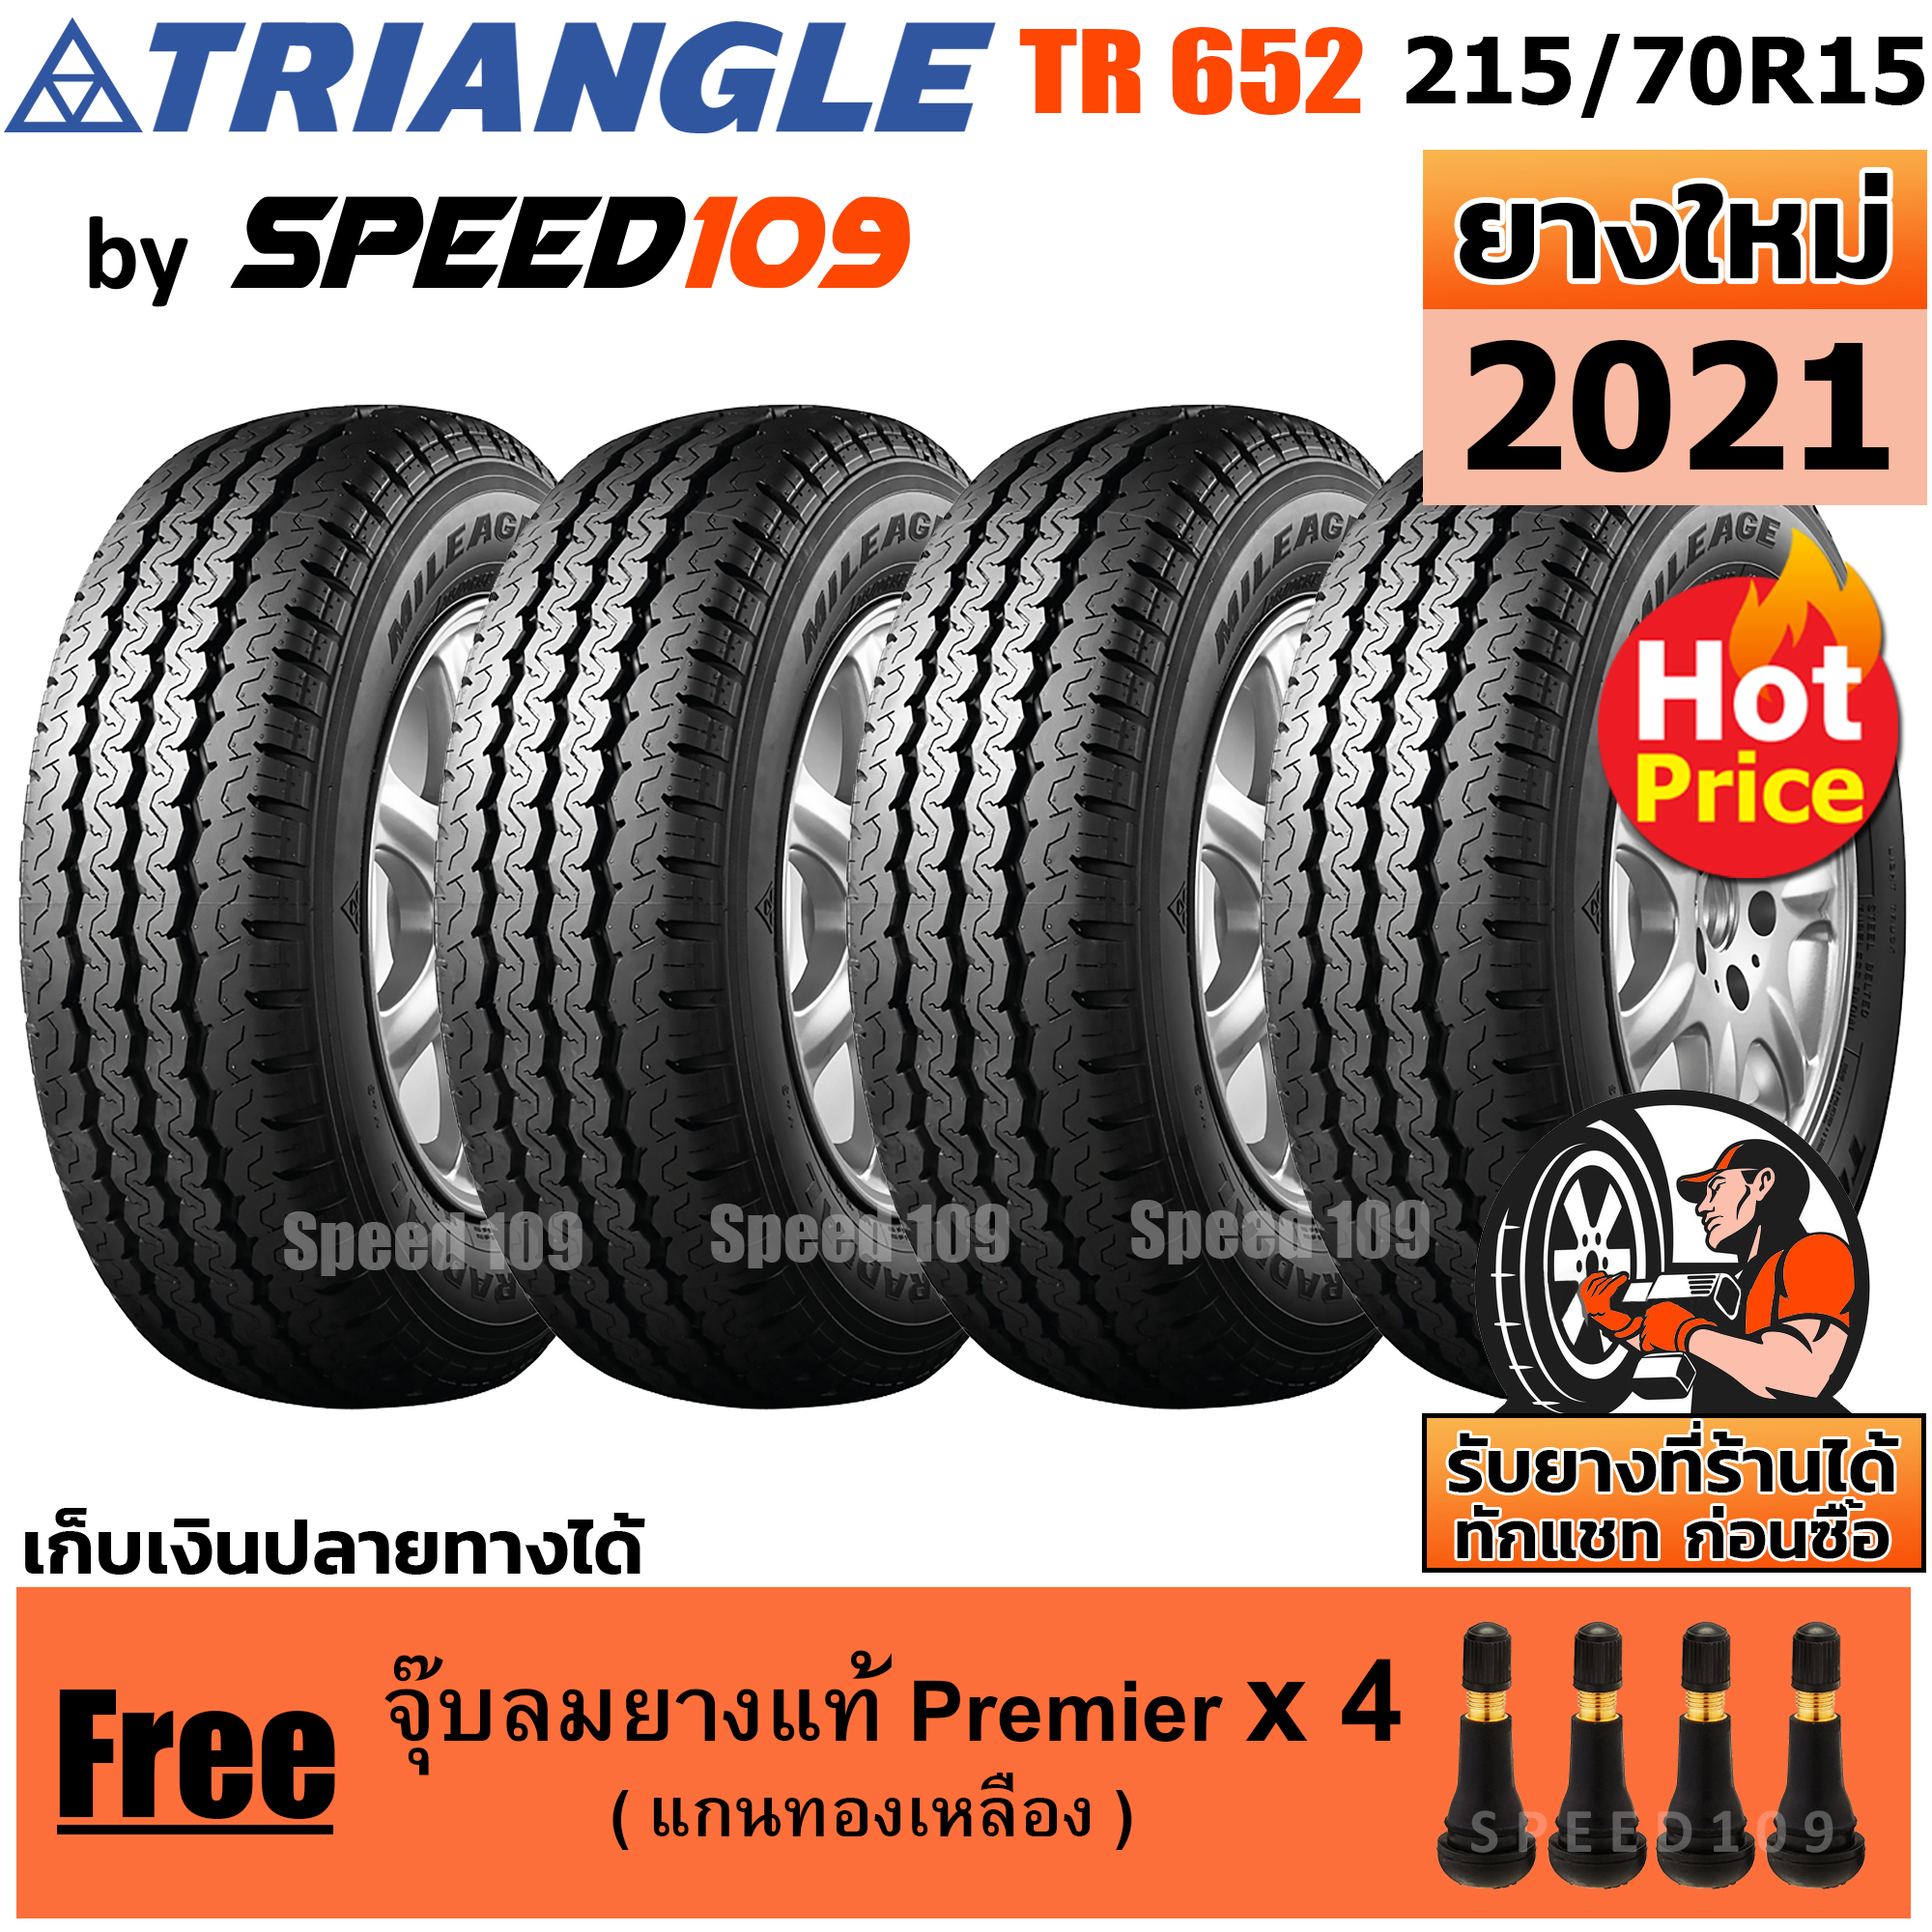 TRIANGLE ยางรถยนต์ ขอบ 15 ขนาด 215/70R15 รุ่น TR652 - 4 เส้น (ปี 2021)